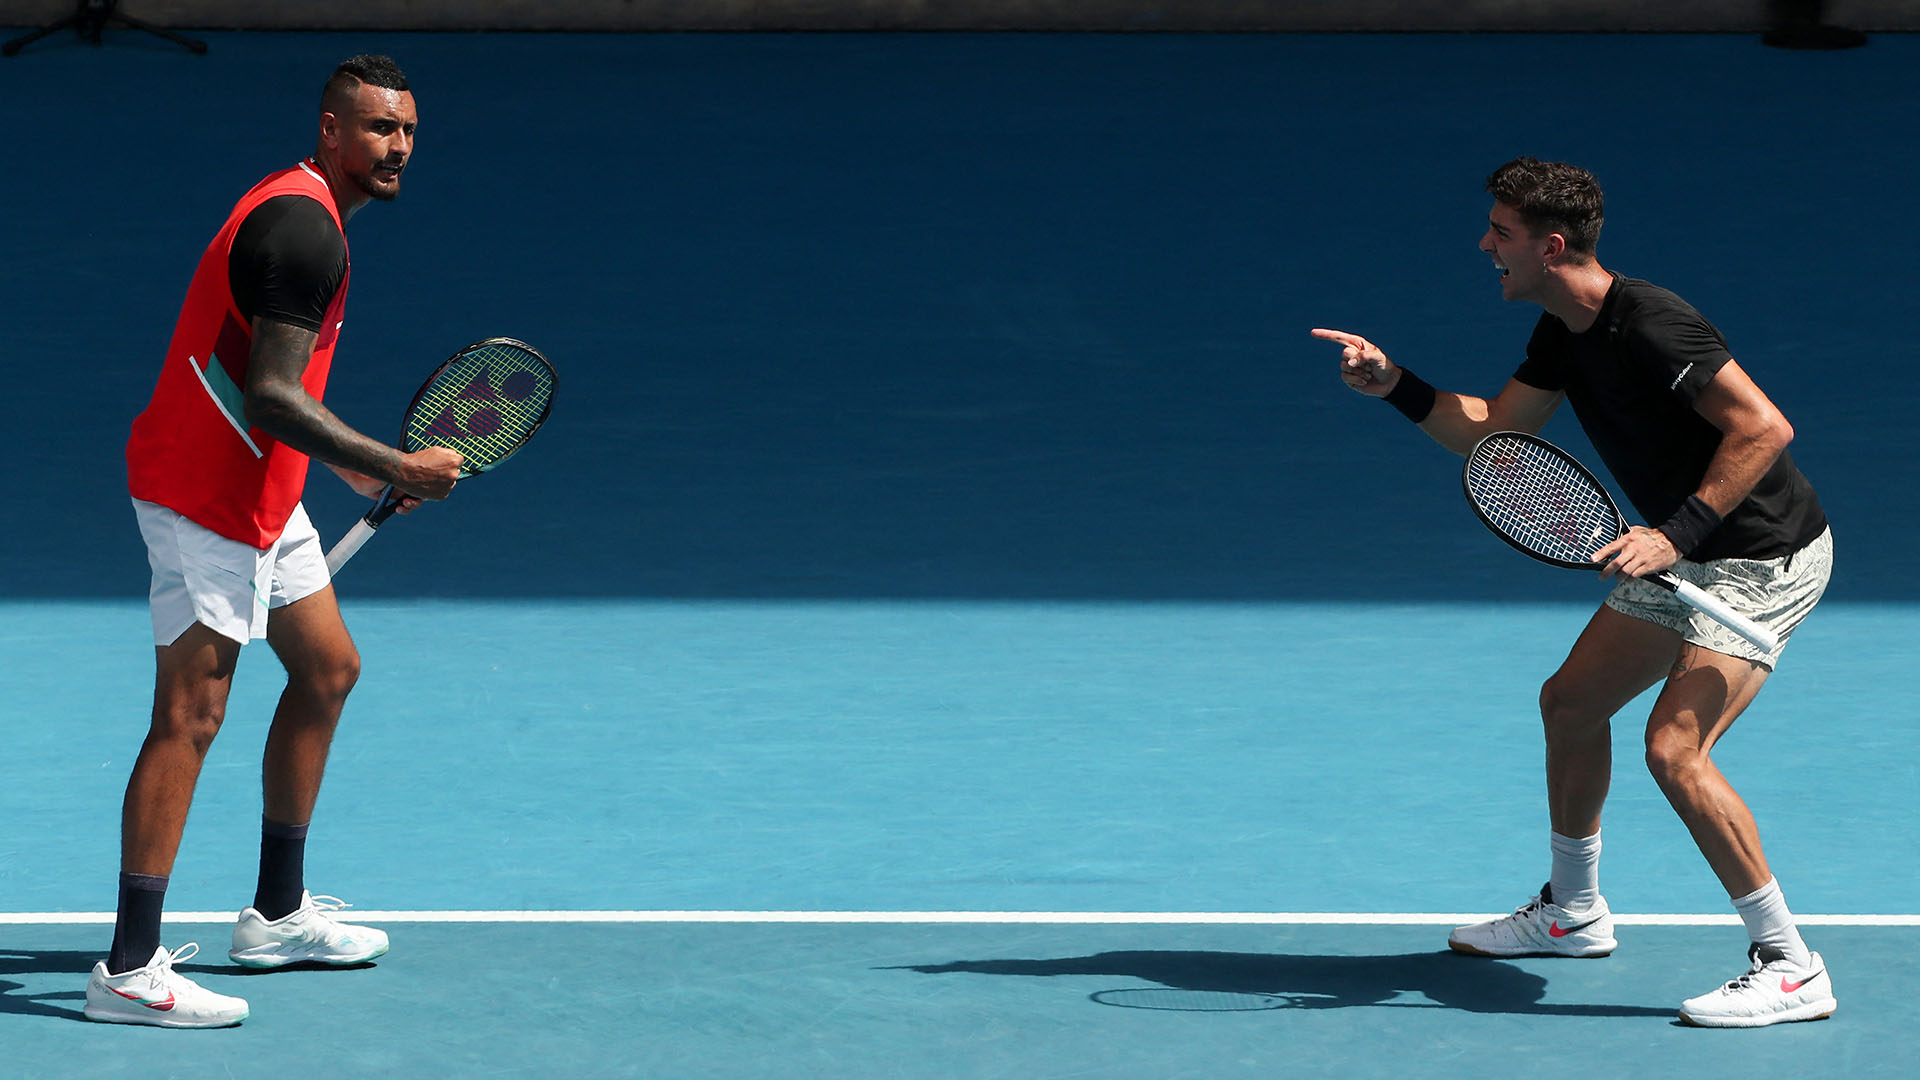 La dupla australiana es una de las grandes sorpresas del primer Grand Slam de la temporada (Foto: AFP)